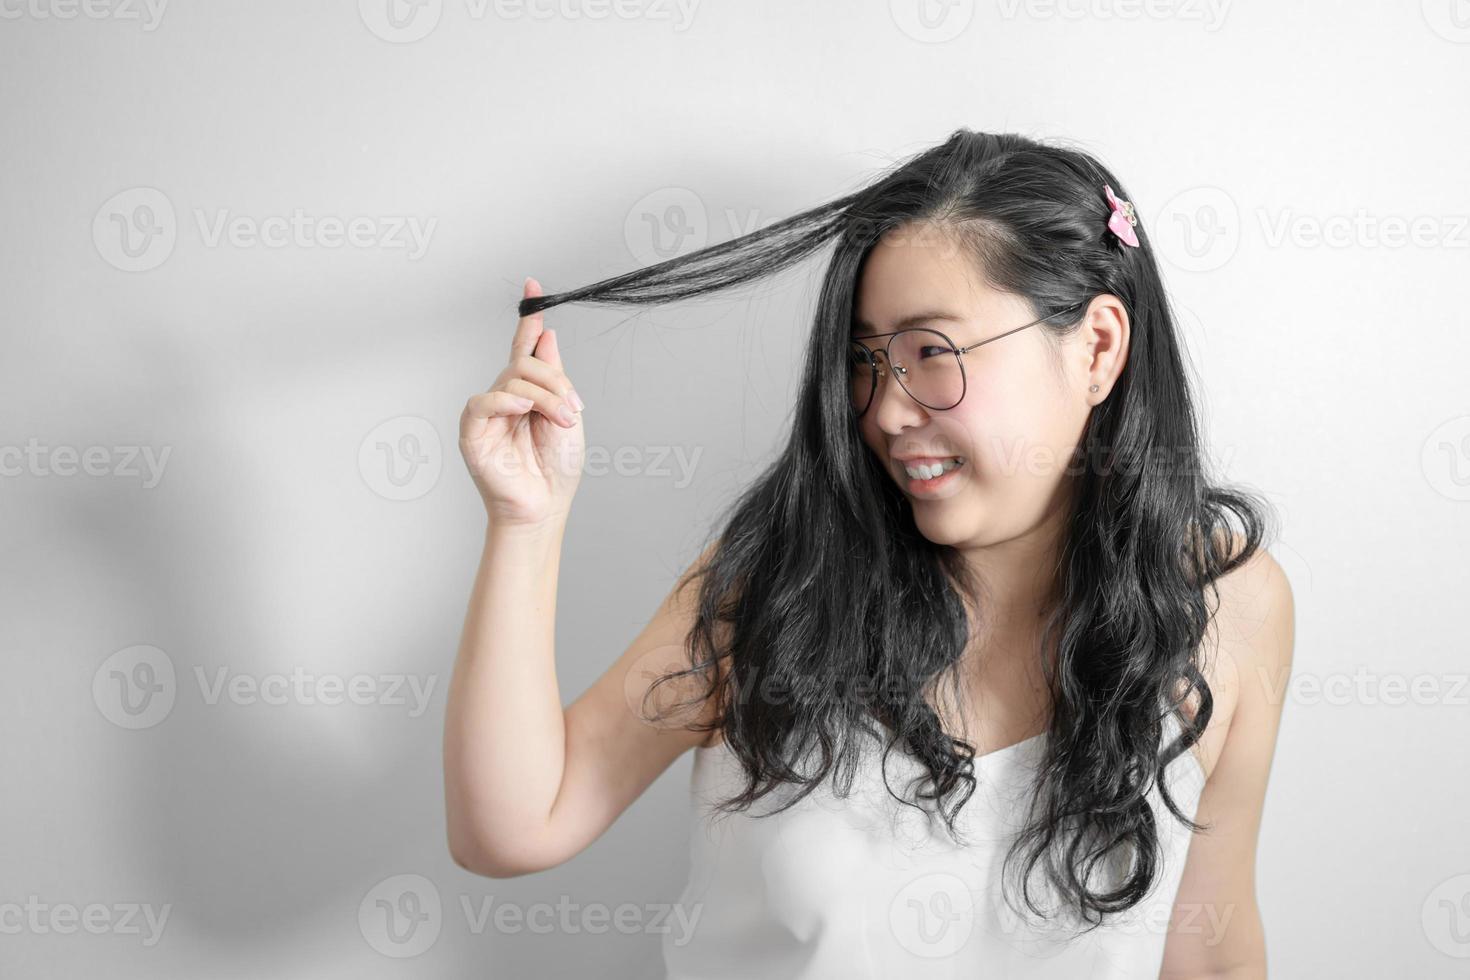 una chica tímida asiática feliz y sonríe jugando con su cabello en un estudio de fondo blanco claro. foto